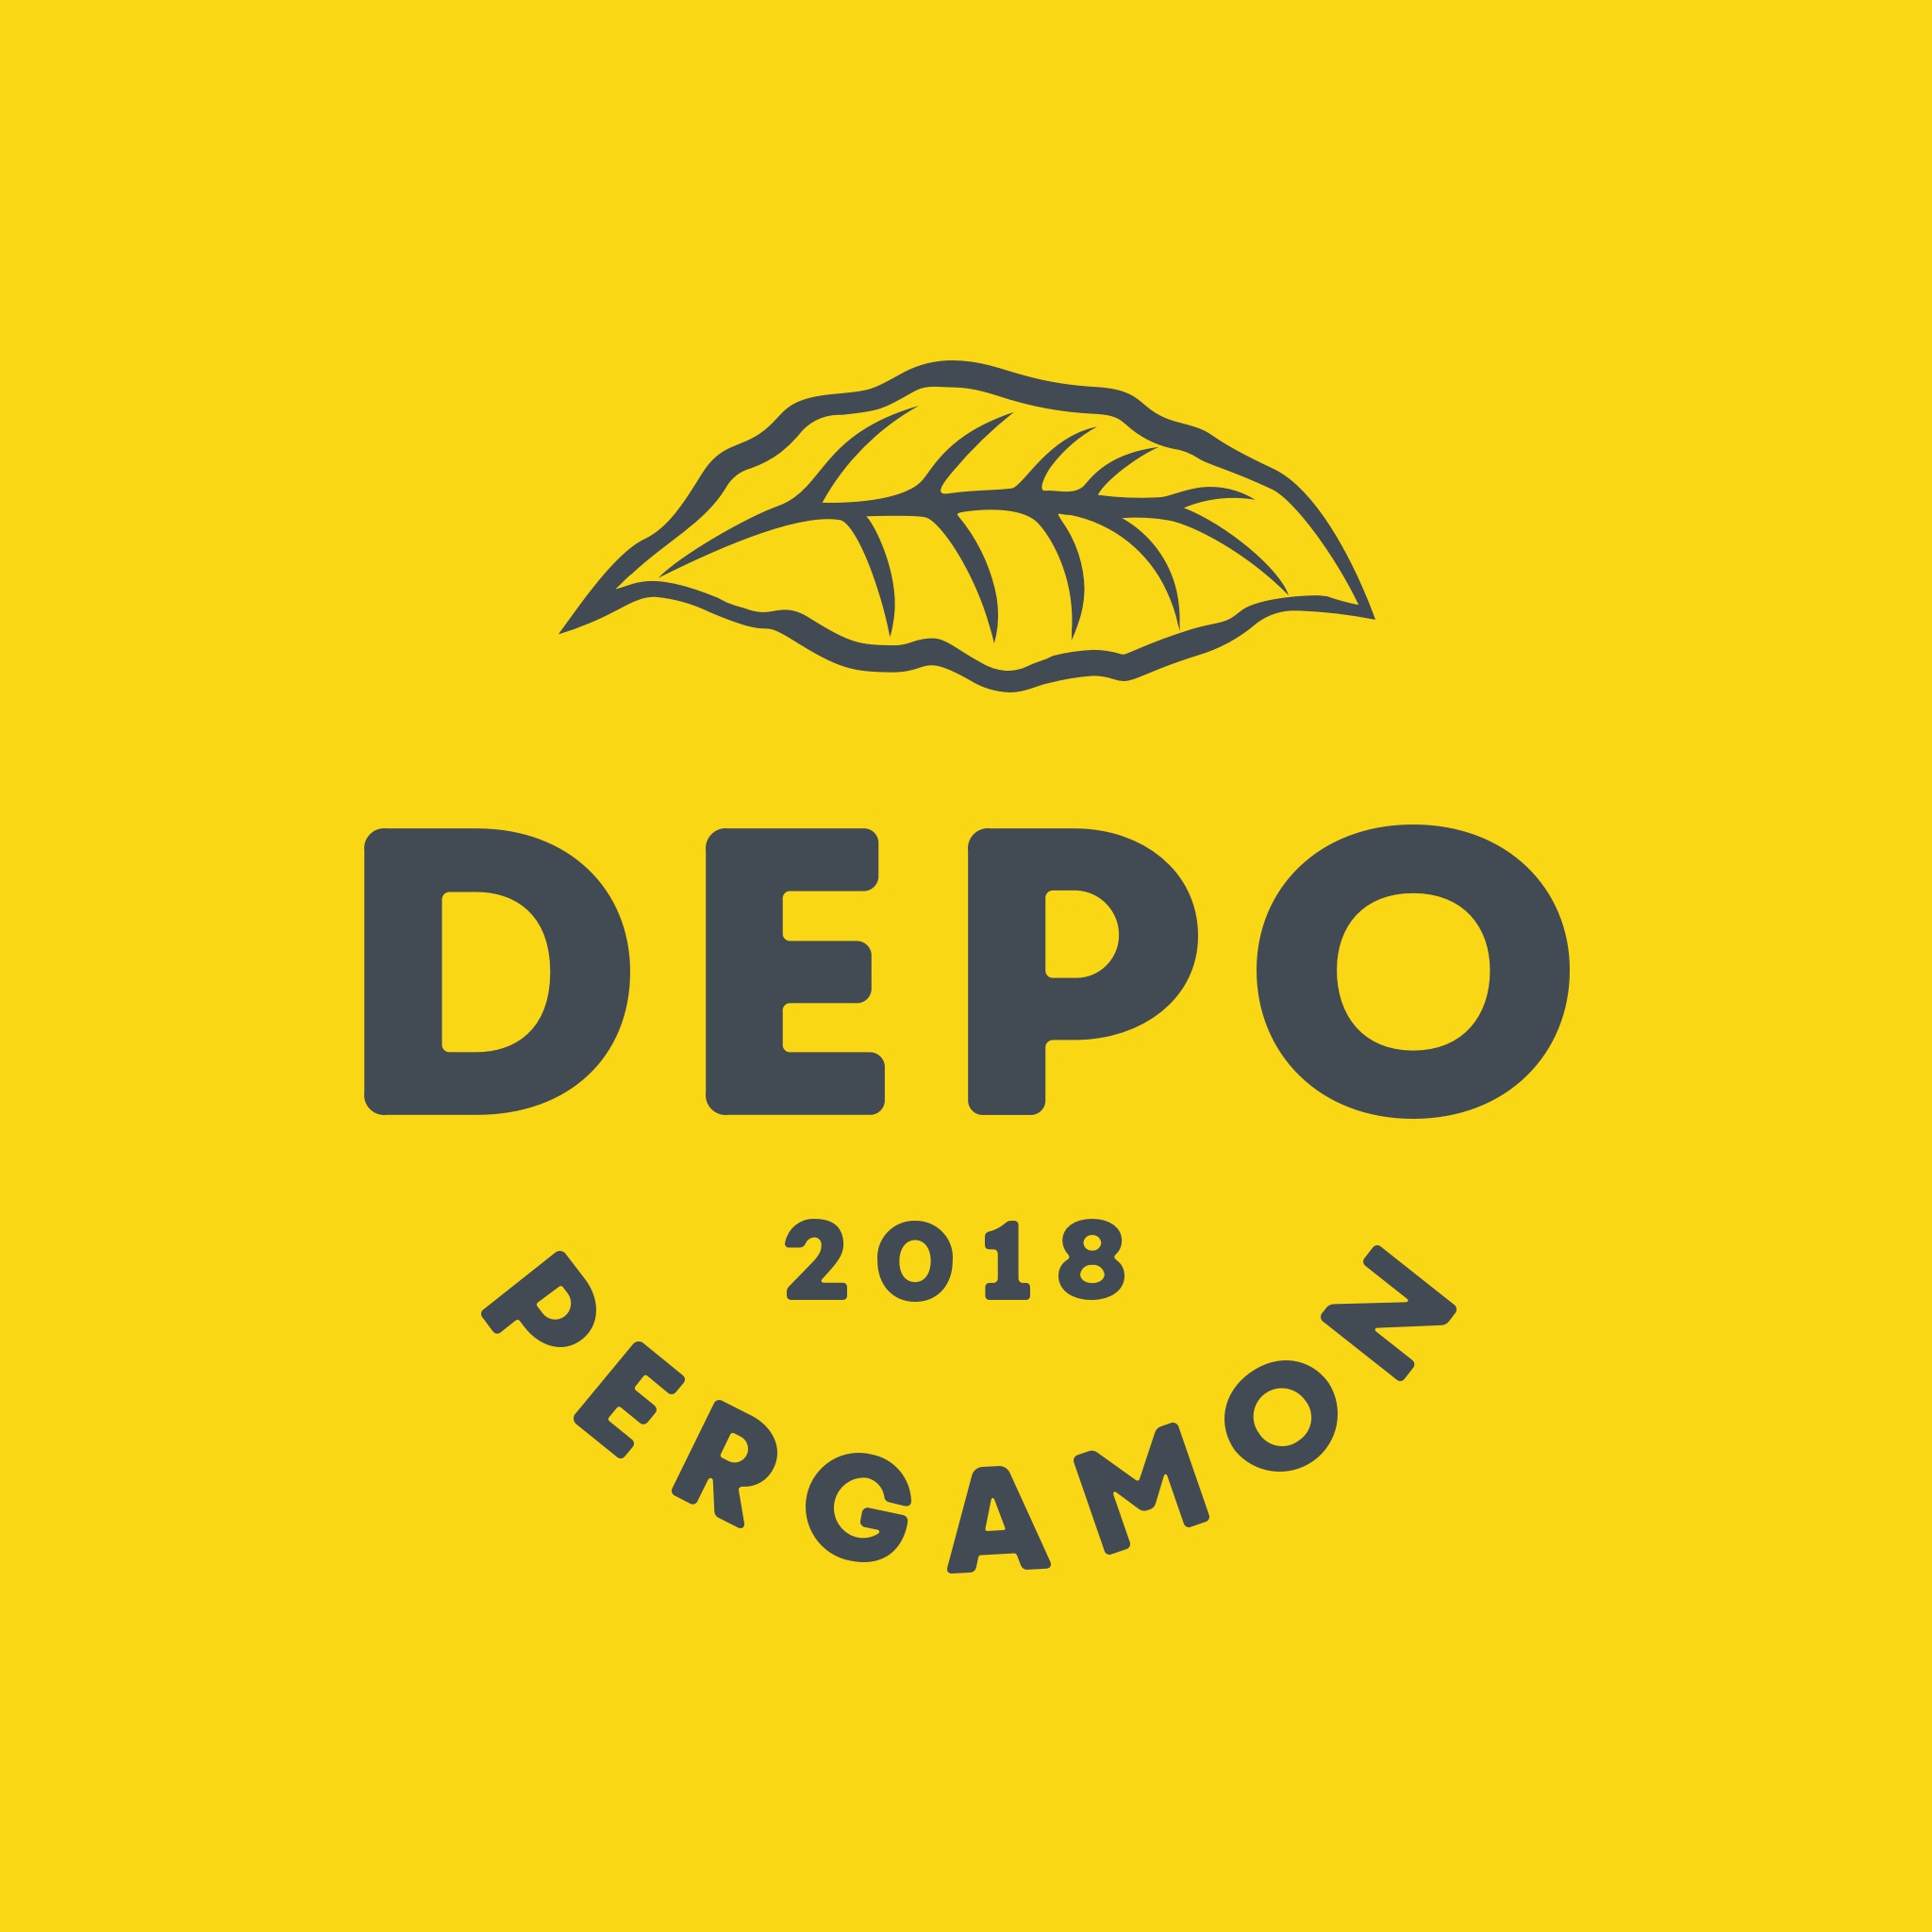 Diseño de logotipo para Depo Pergamon - Un trabajo de Silvia Calavera